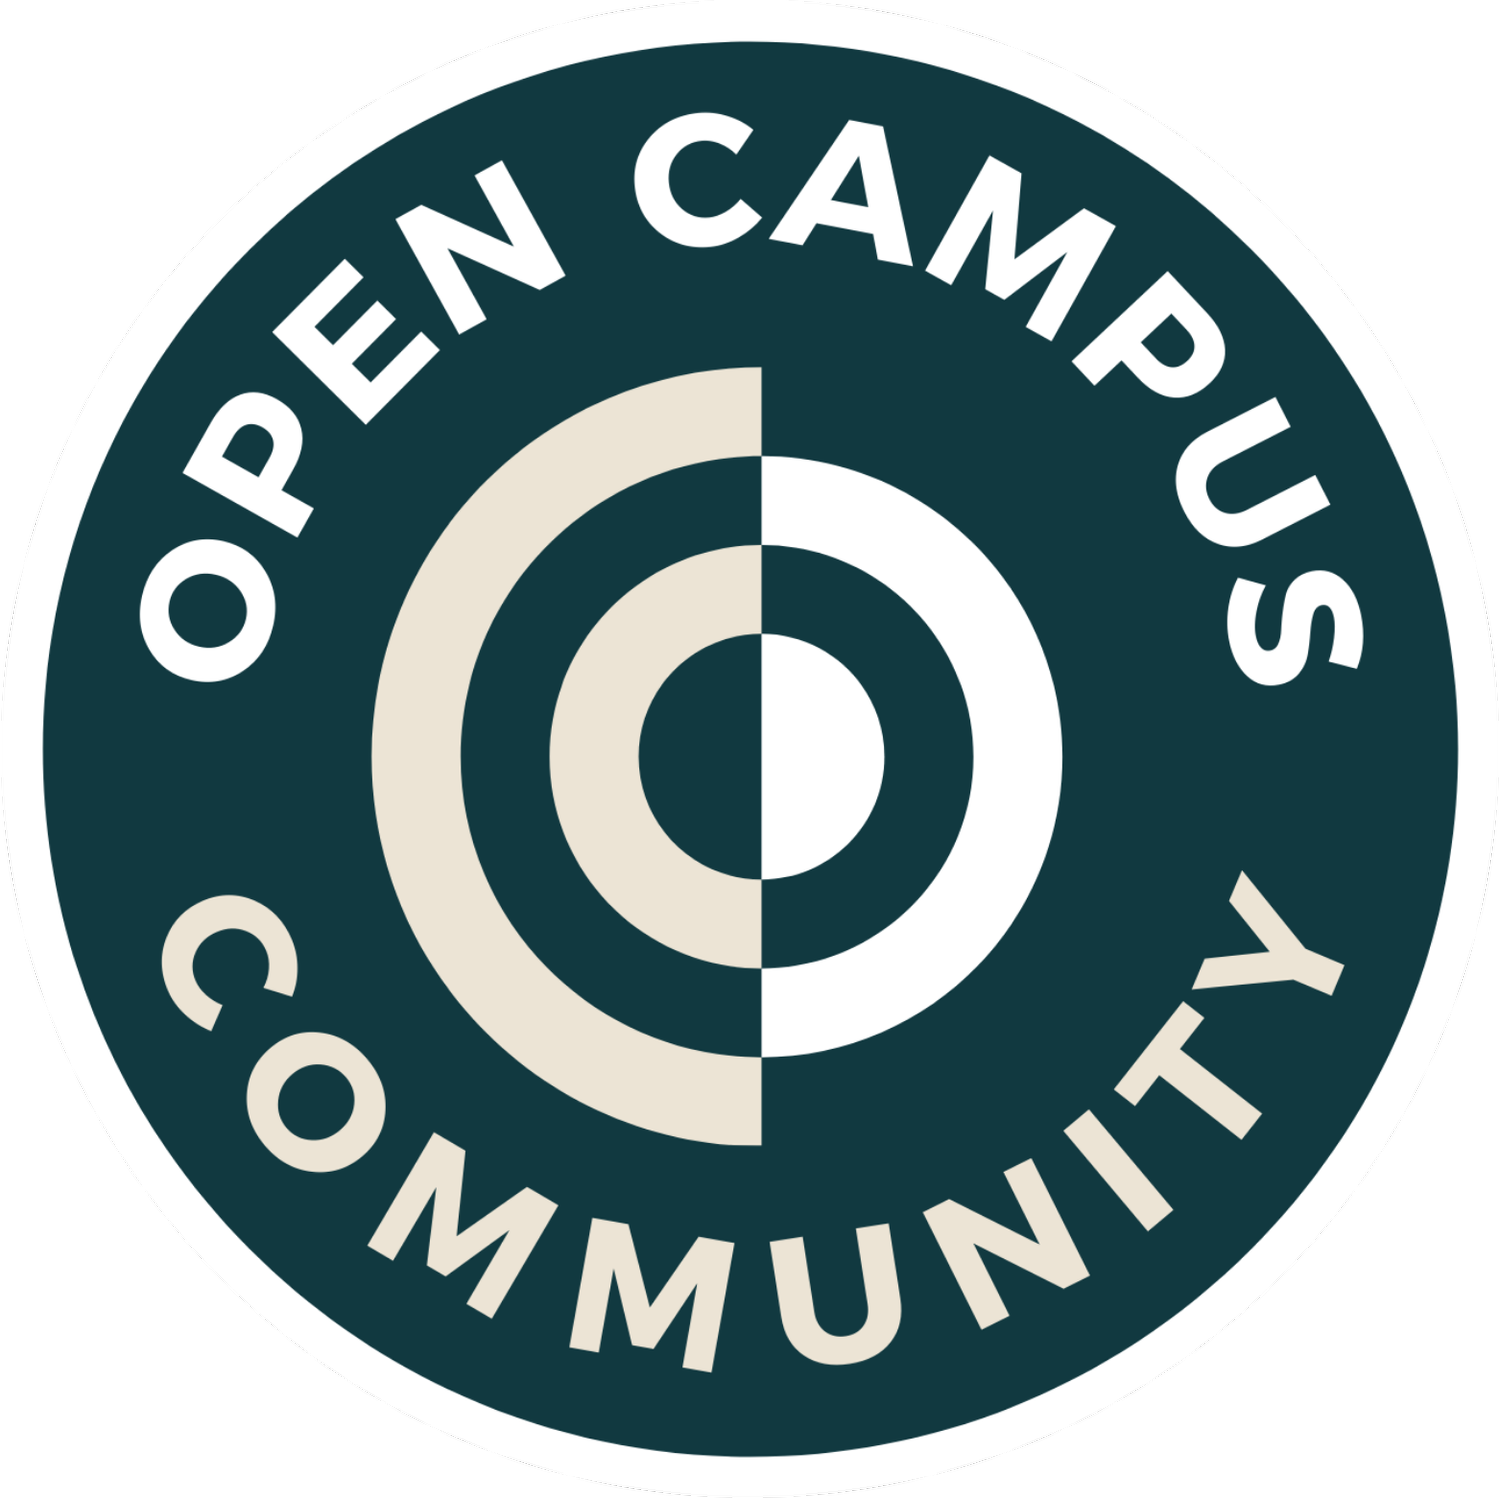 Open Campus Community